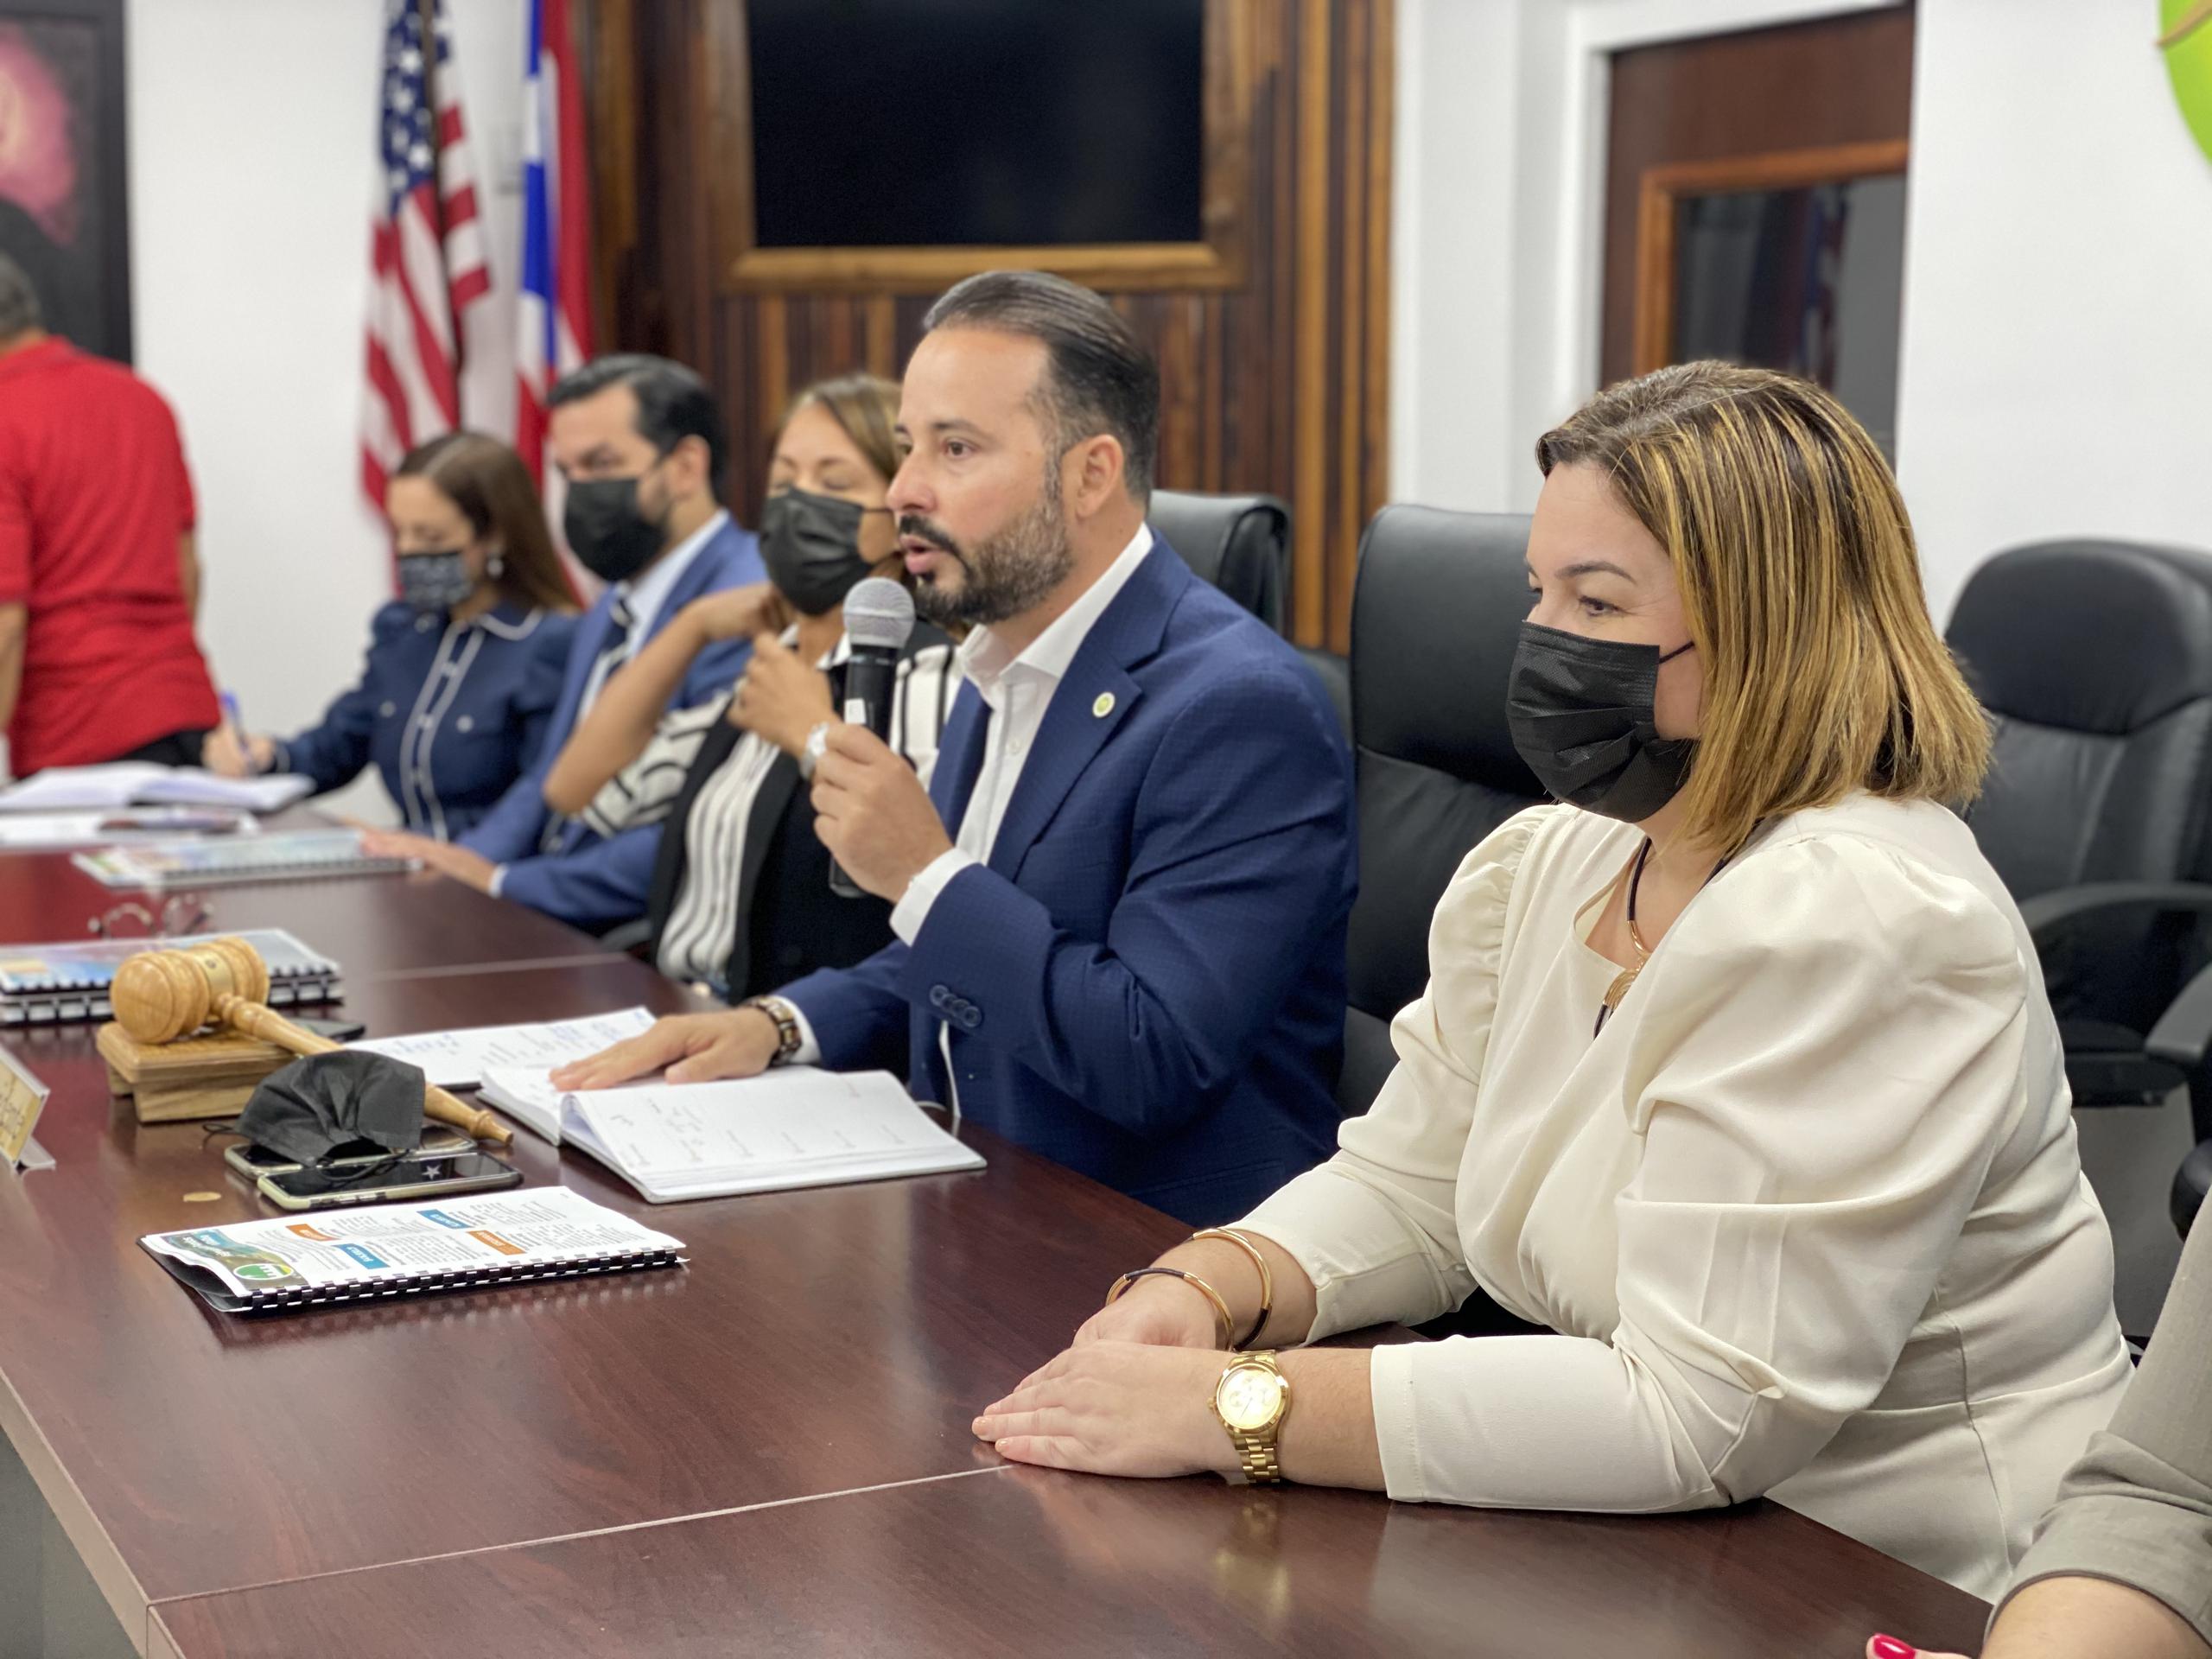 La información la dio a conocer el presidente de la organización que agrupa a los alcaldes del Partido Popular Democrático, Luis Javier Hernández.